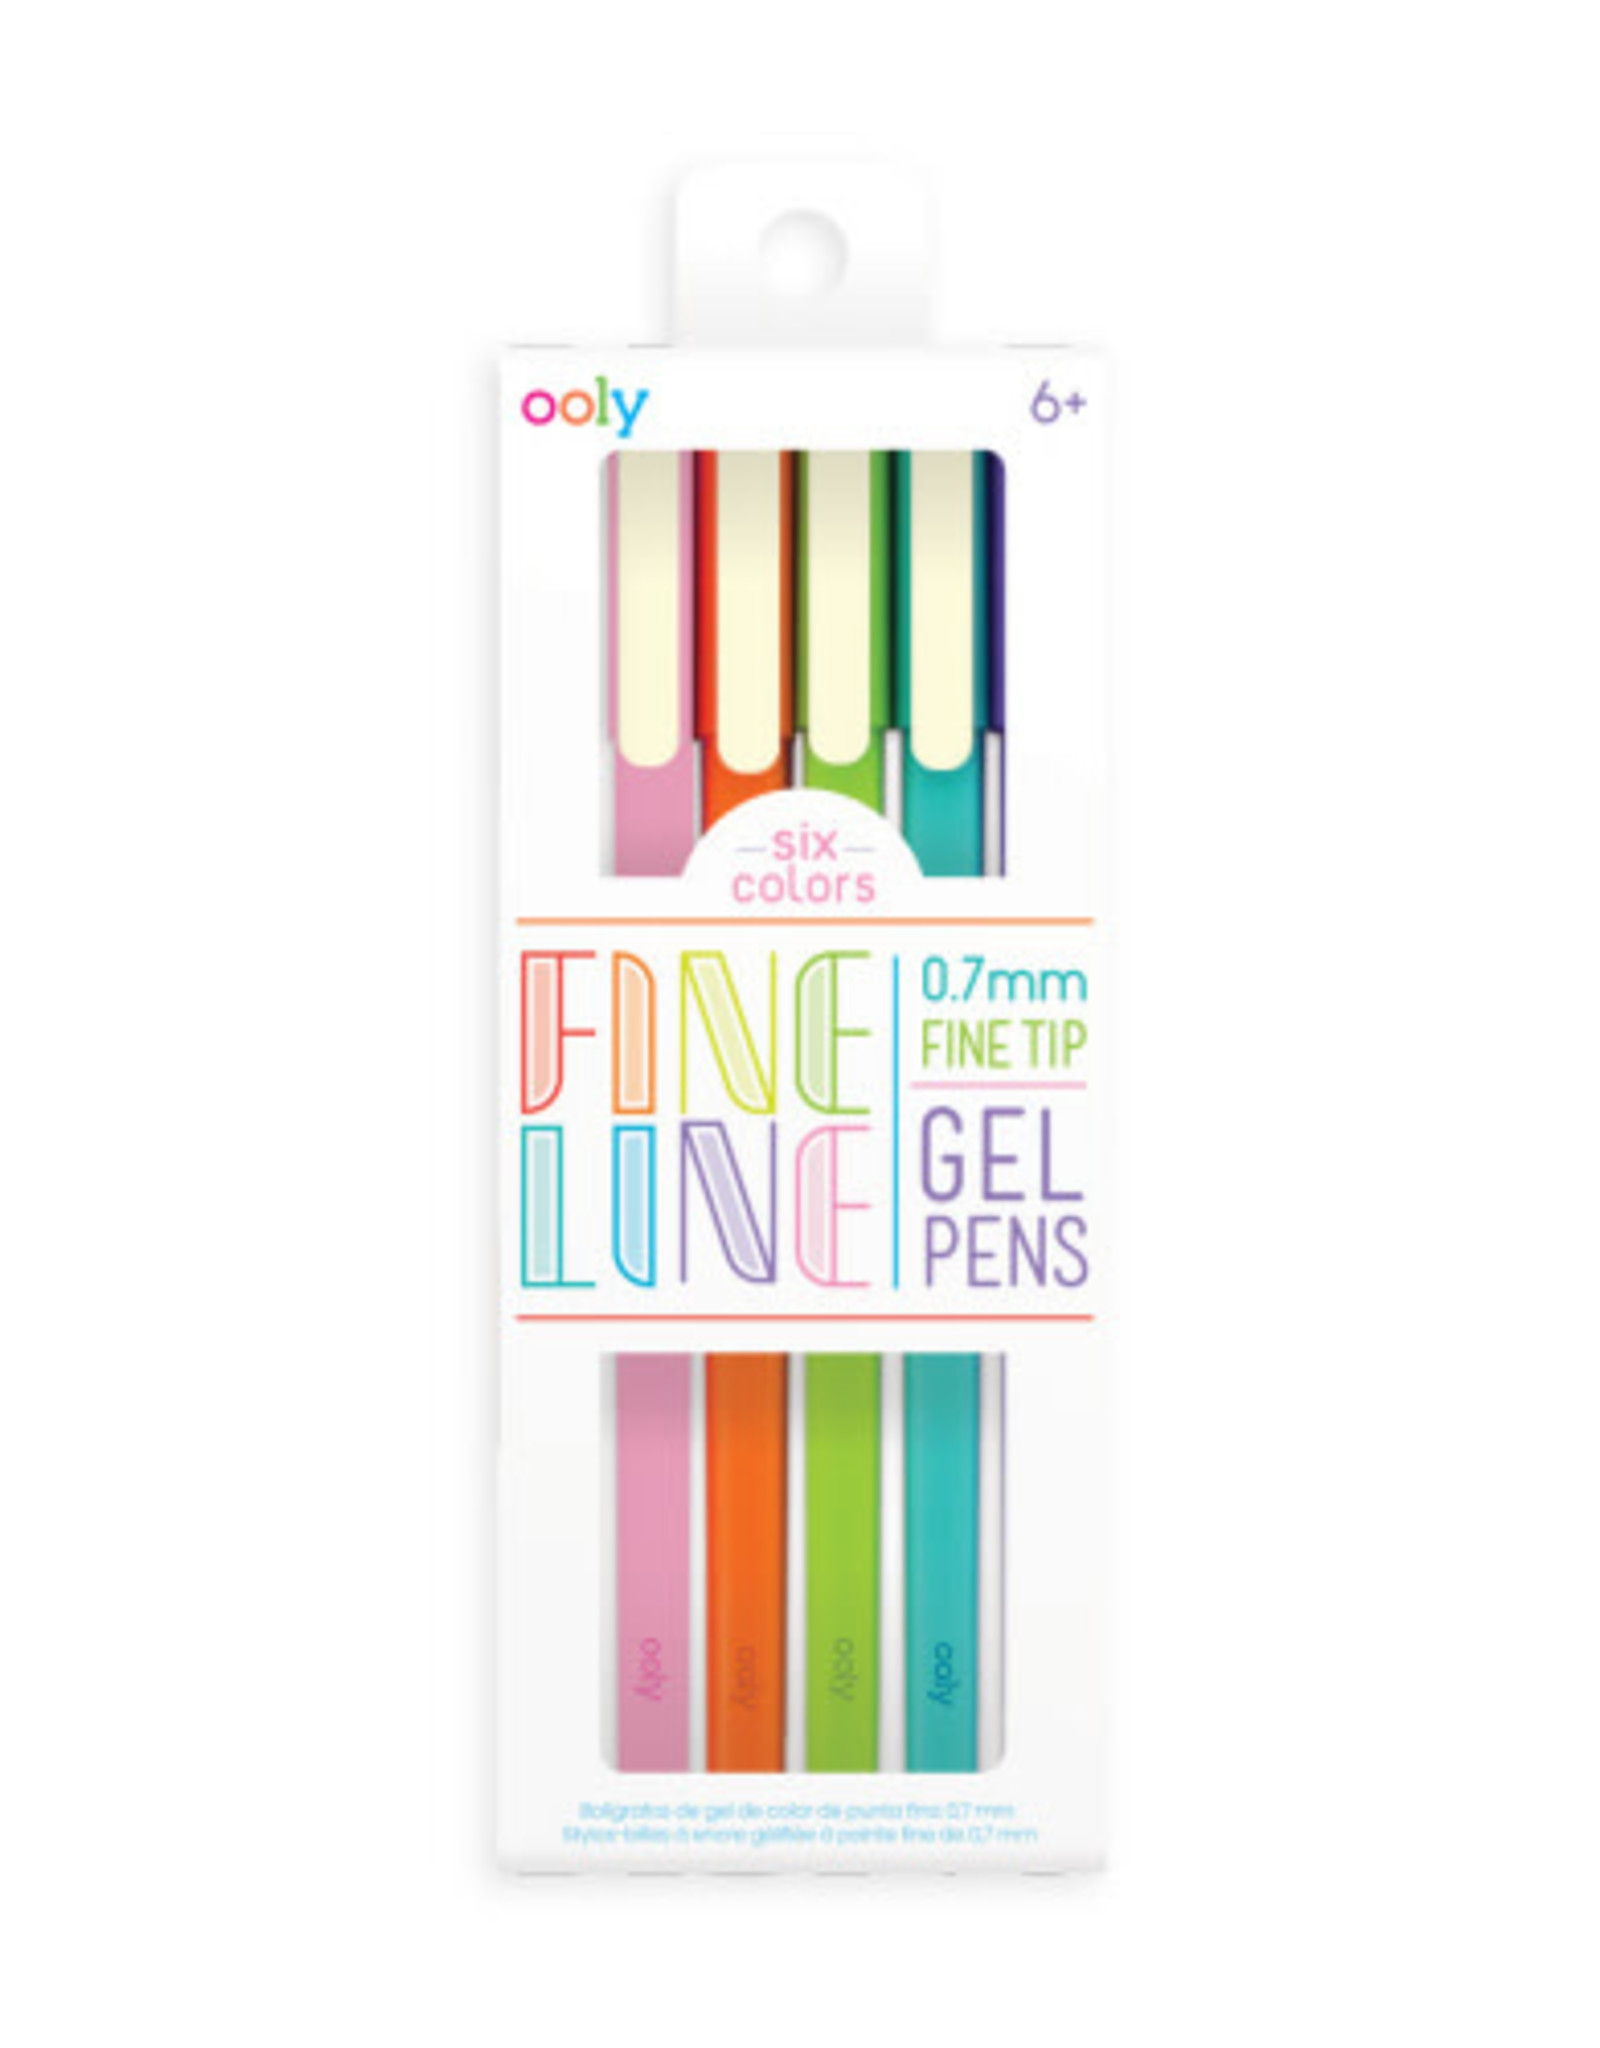 OOLY Fine Line Gel Pens